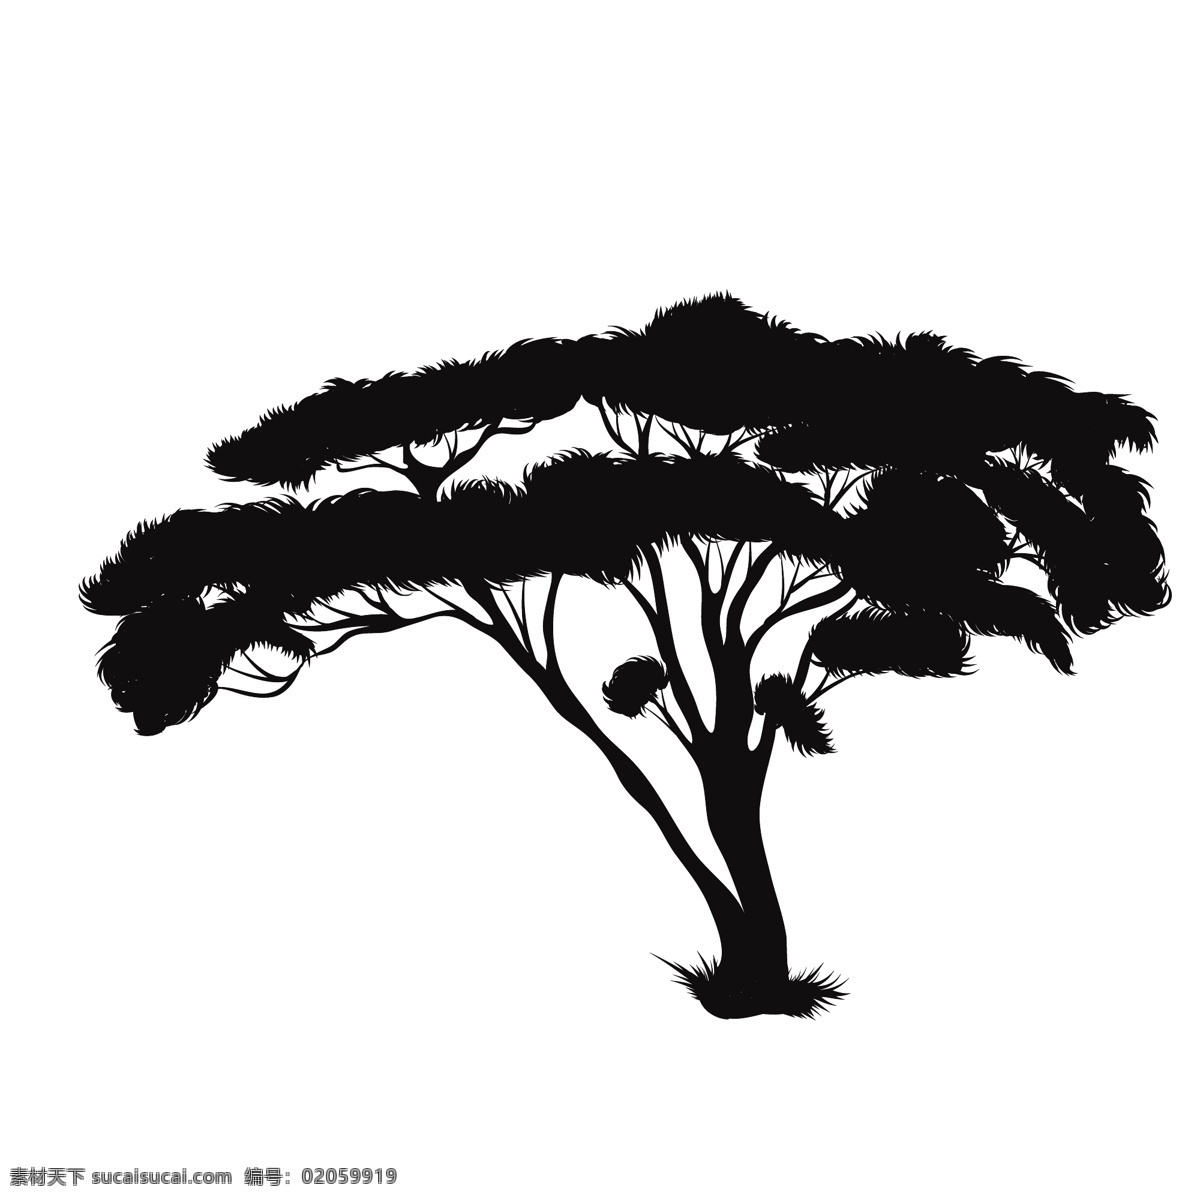 黑色 植物 树木 剪影 树枝 树干 涂鸦 图案 简约 绘画 树叶 树苗 素描 椰子树 松树